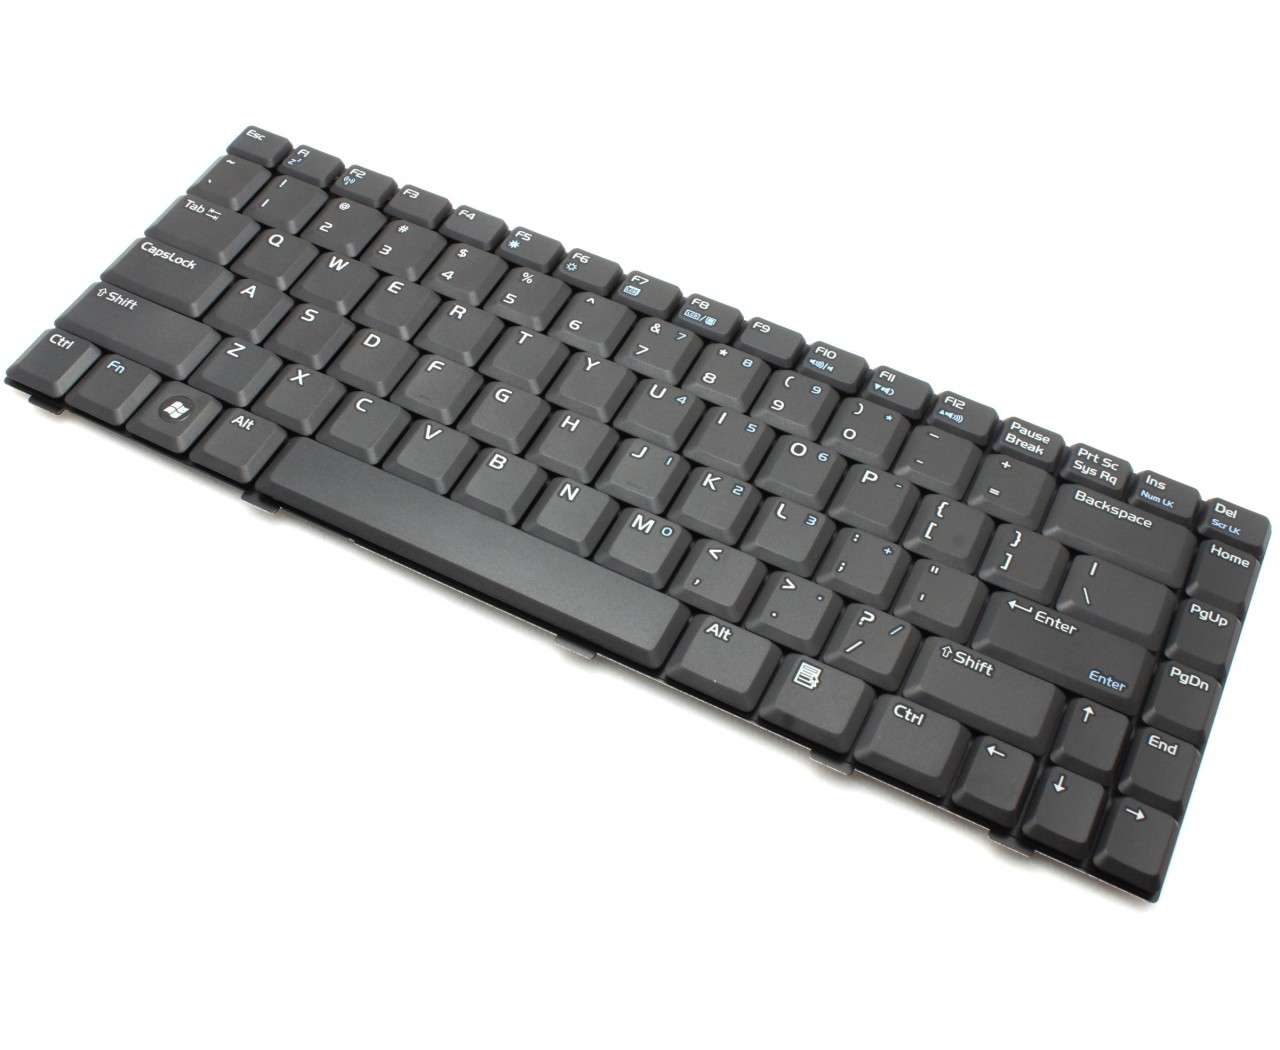 Tastatura Asus A8T